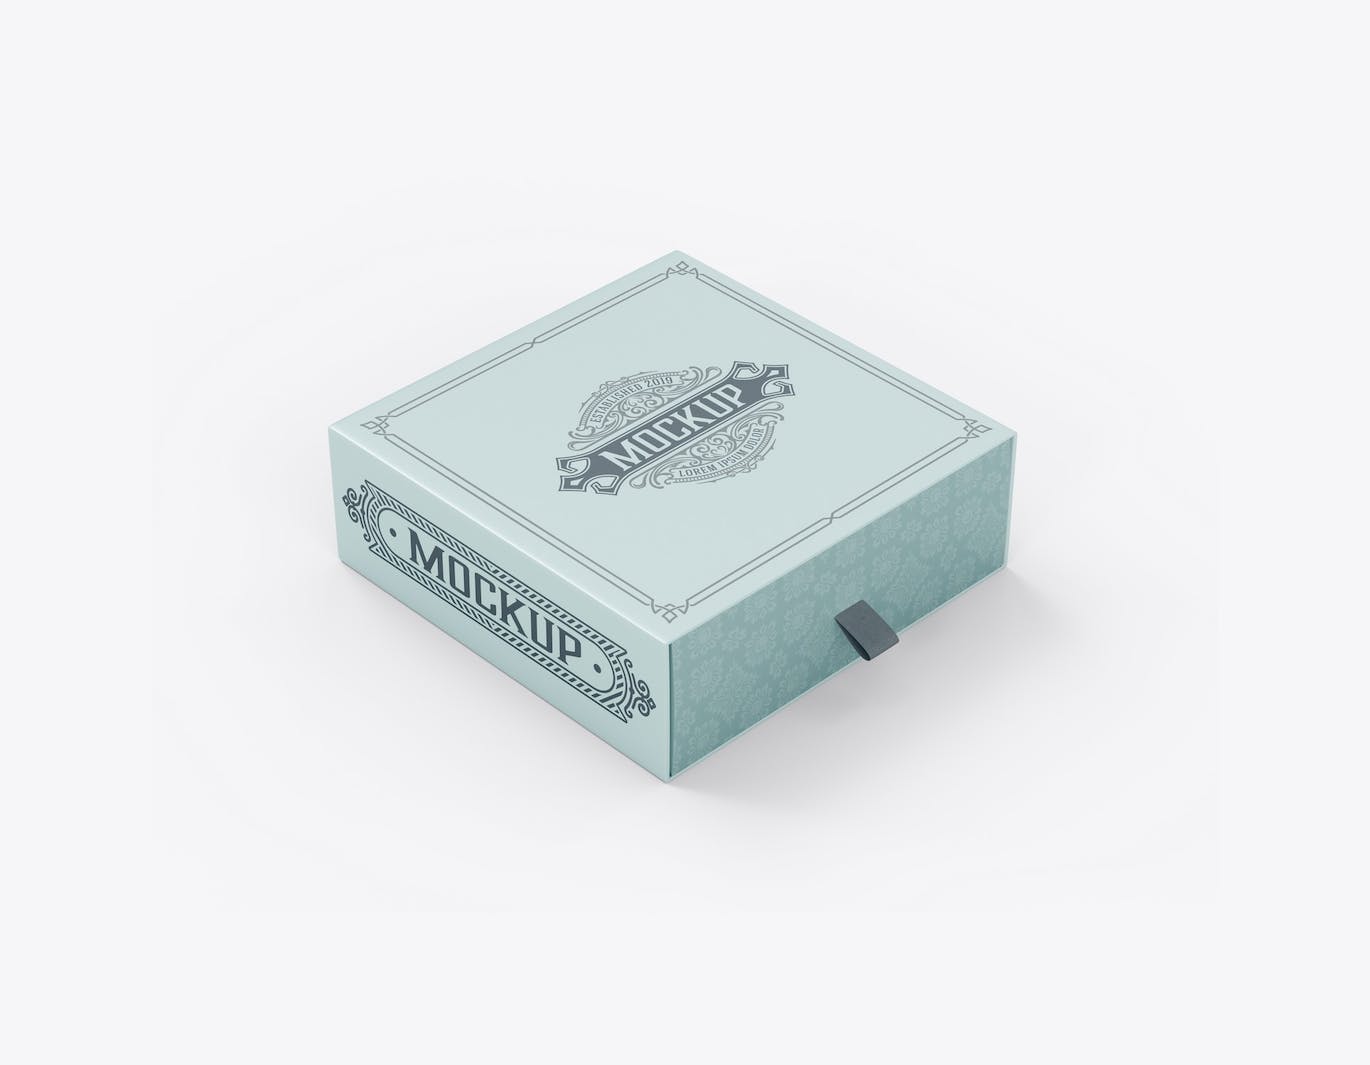 拖式纸盒包装设计样机 SlideBox Mockup 样机素材 第4张